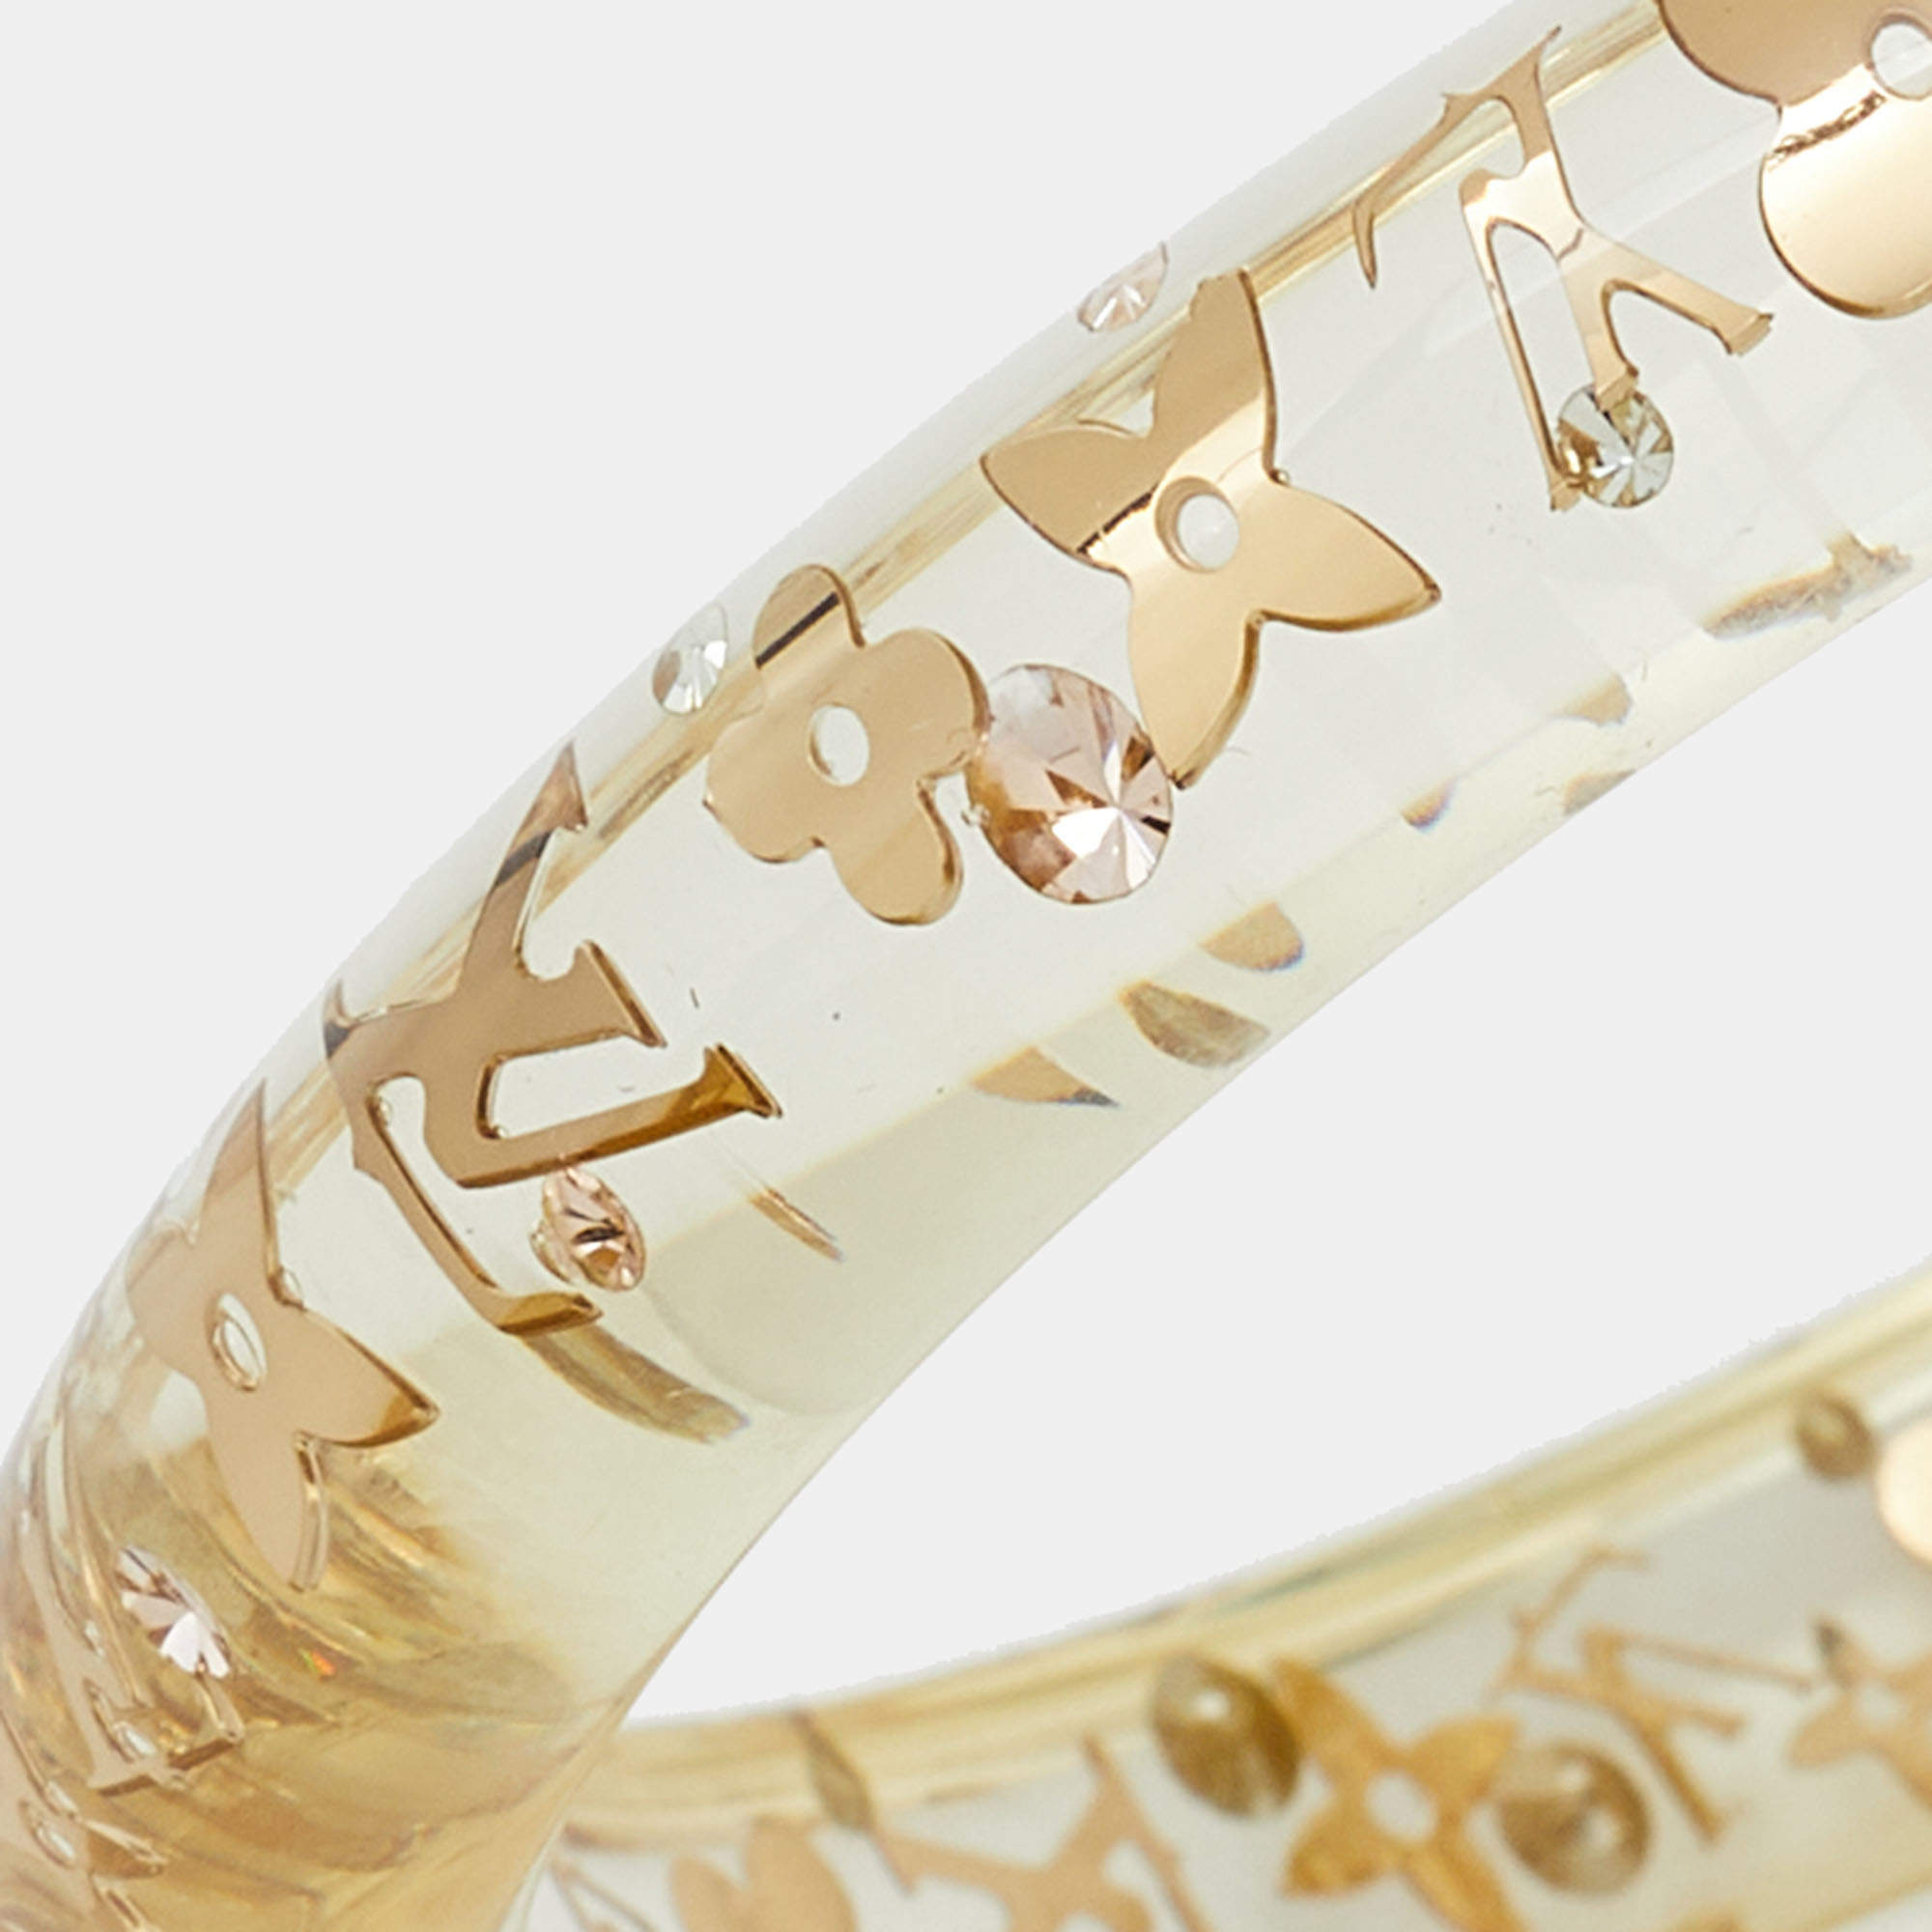 Authentic Pre-owned Louis Vuitton Monogram Inclusion Bracelet Bangle Clear  Beige Gold M65302 230013